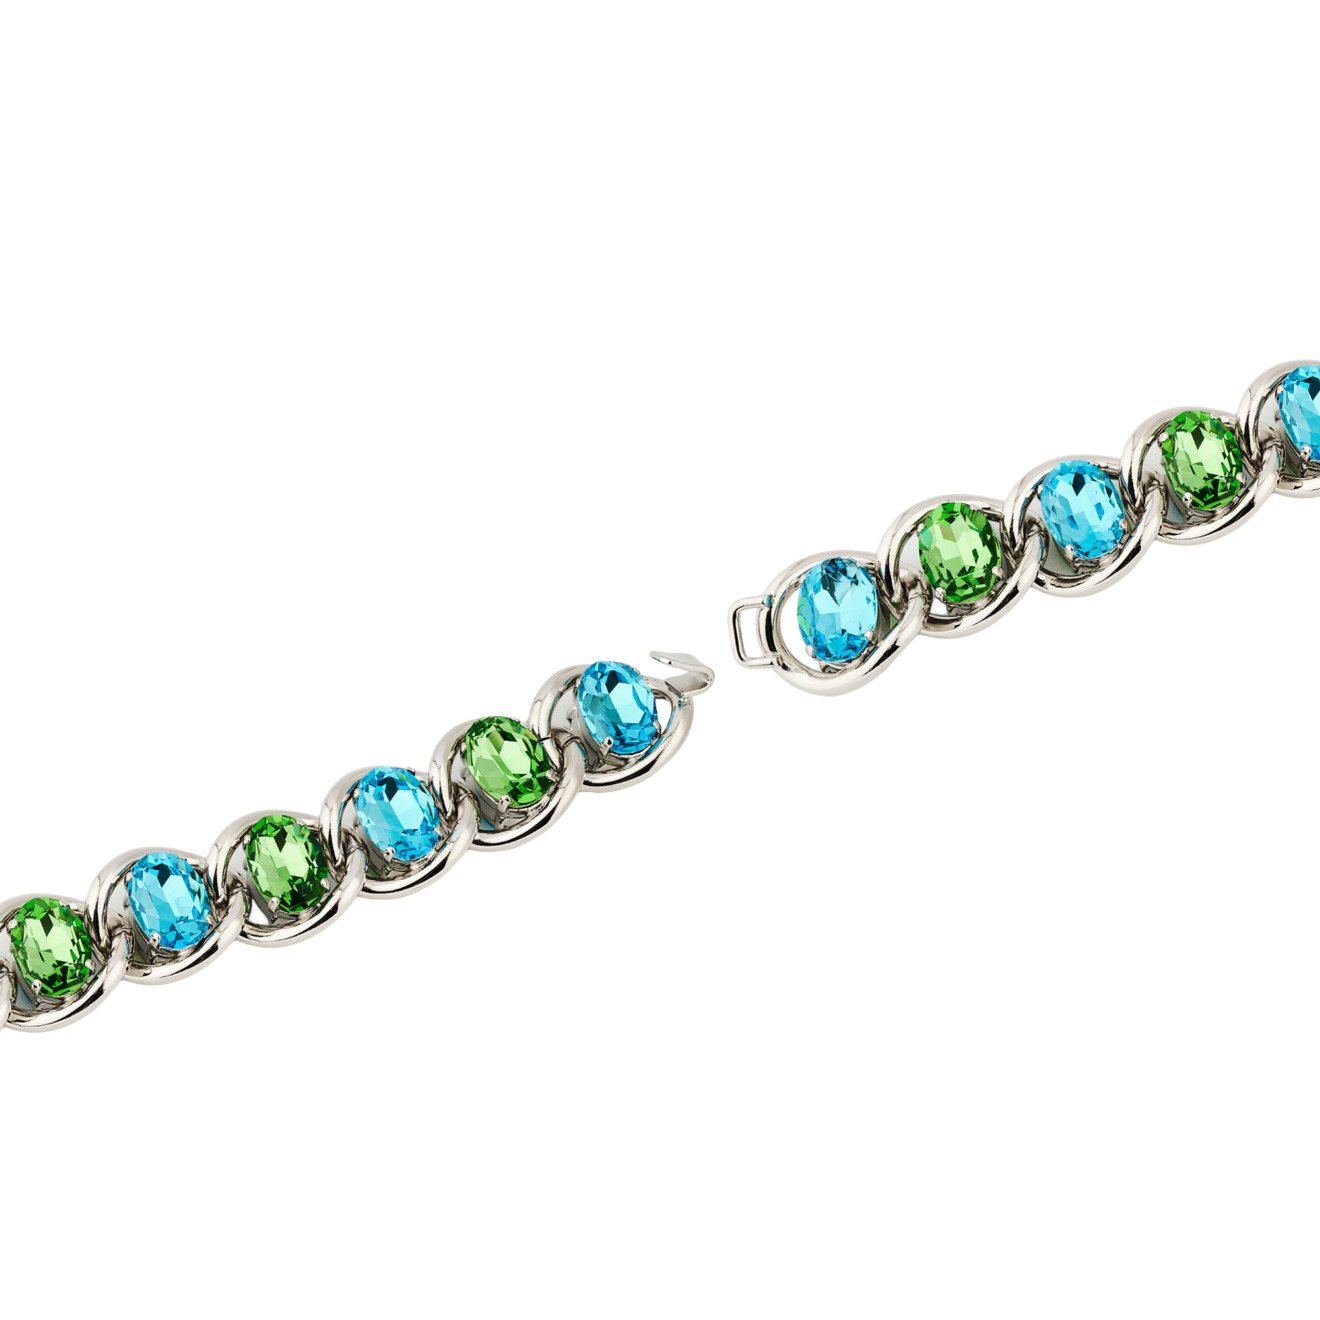 Marni Браслет-цепь с зелено-голубыми кристаллами marni биколорный браслет цепь с подвесками из колец